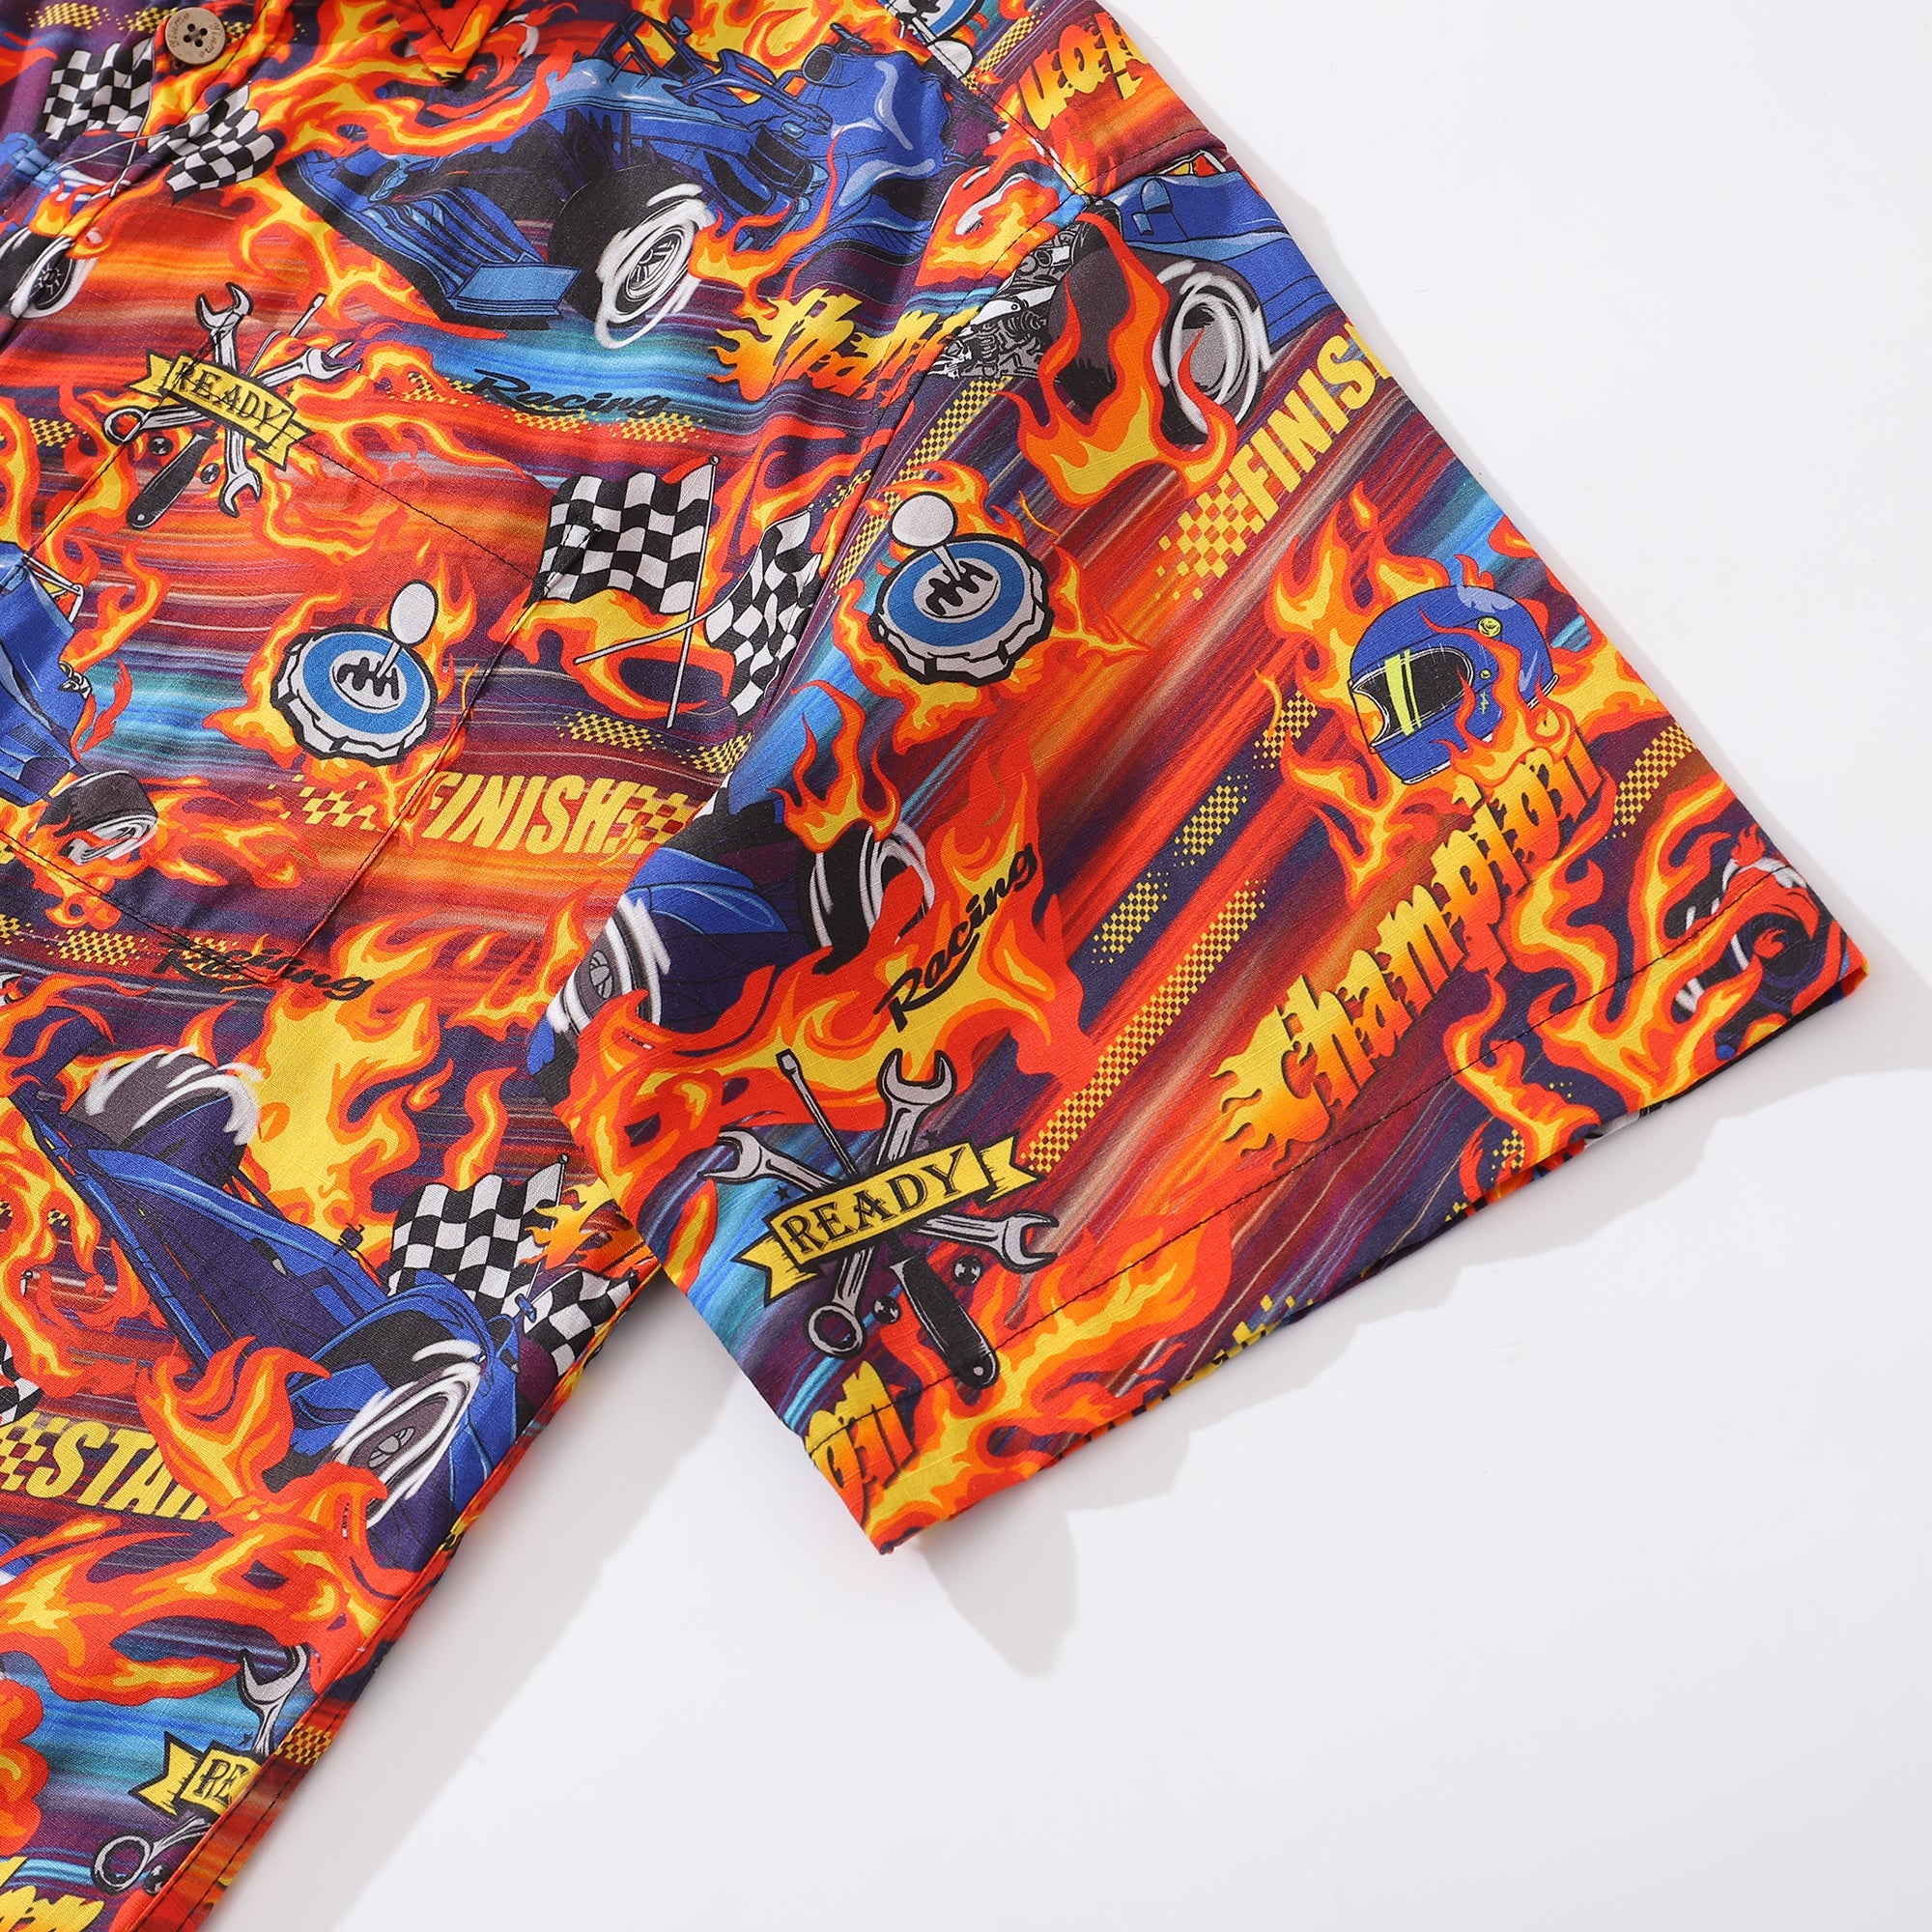 Hawaiian Shirt For Men Speed Button-down Short Sleeve 100% Cotton Shirt